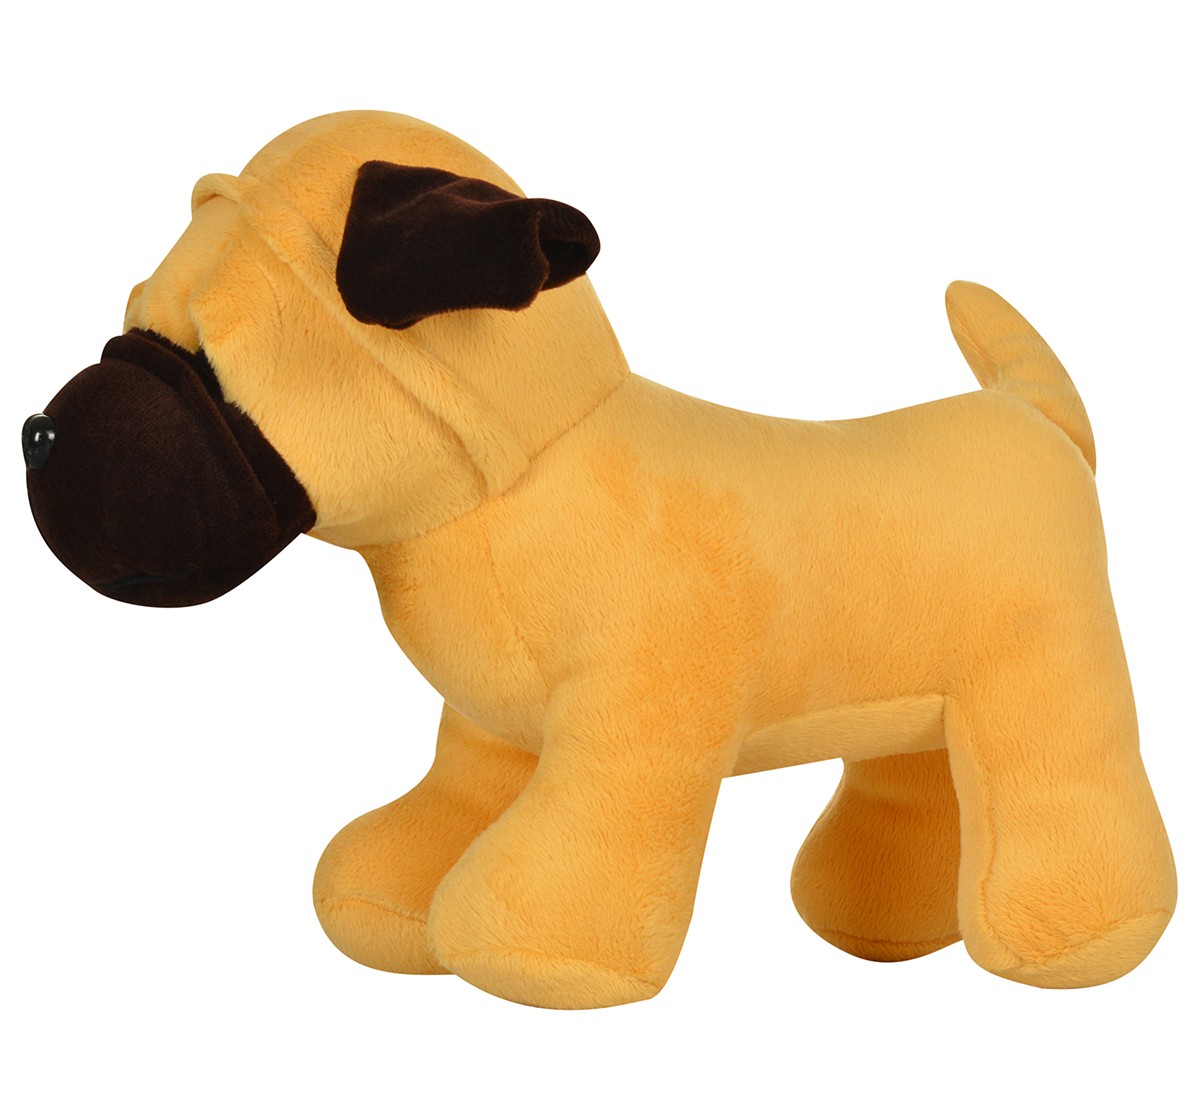 Mirada 25cm dog soft toy Multicolor 3Y+